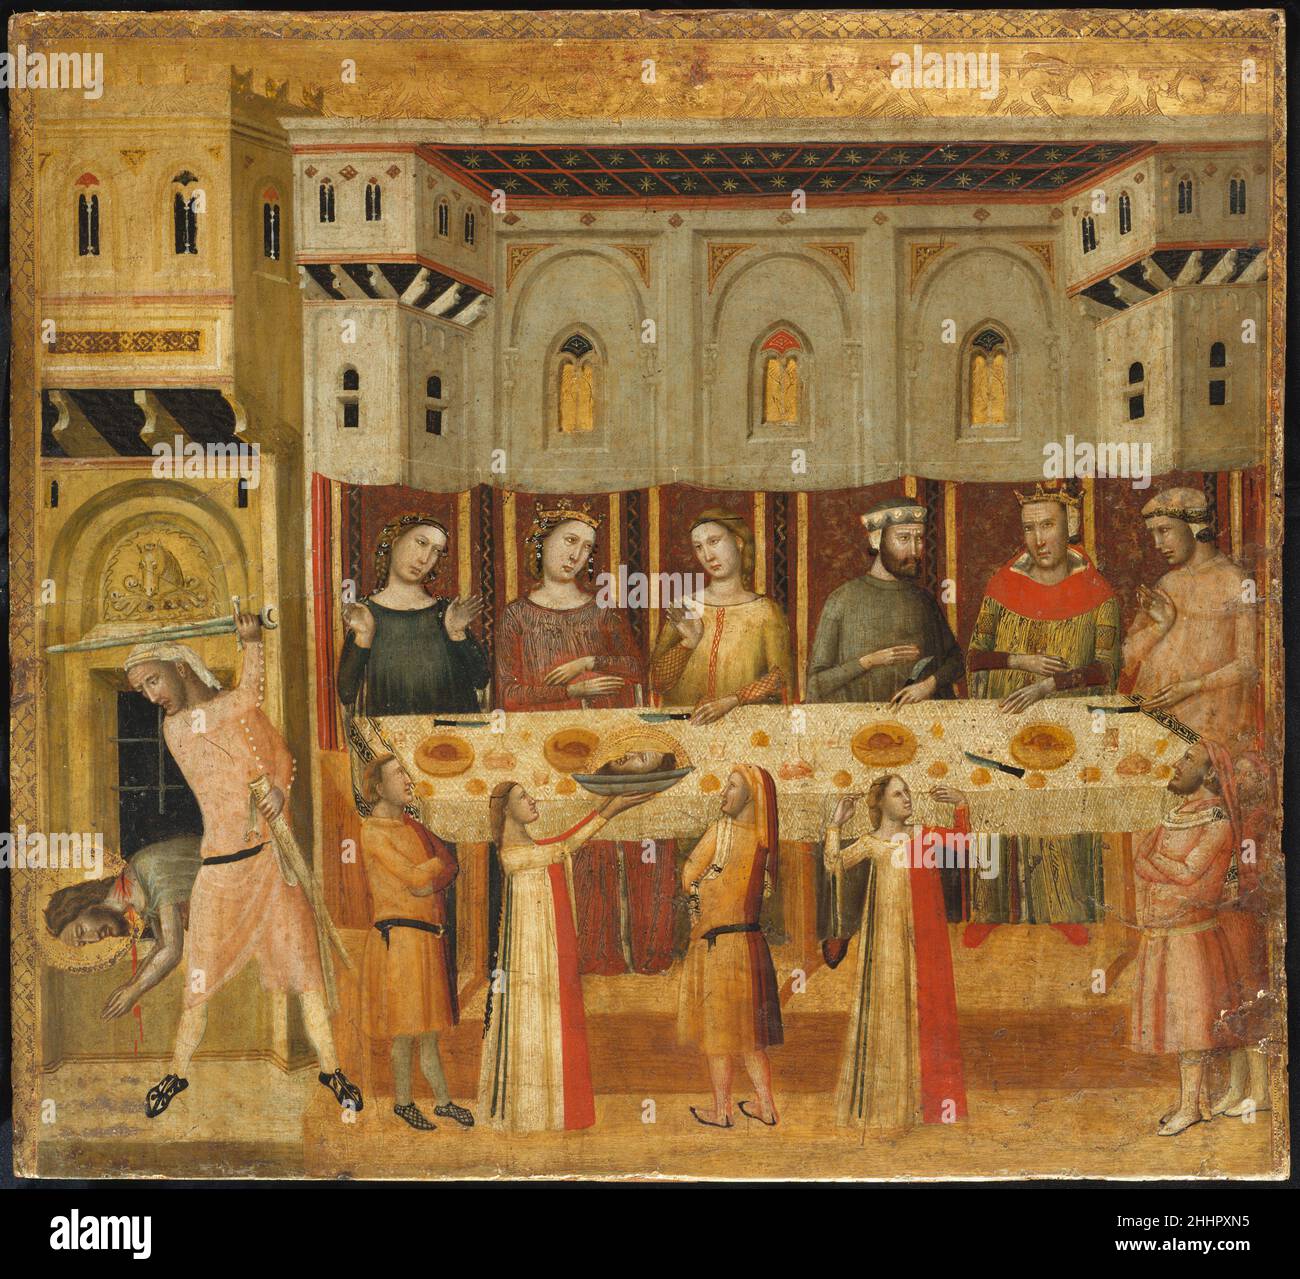 La fiesta de Herodes y la decapitación del Bautista ca. 1330–35 Giovanni  Baronzio Uno de los ejemplos más importantes de pintura del siglo XIV de  Rimini (en la costa adriática de Italia),